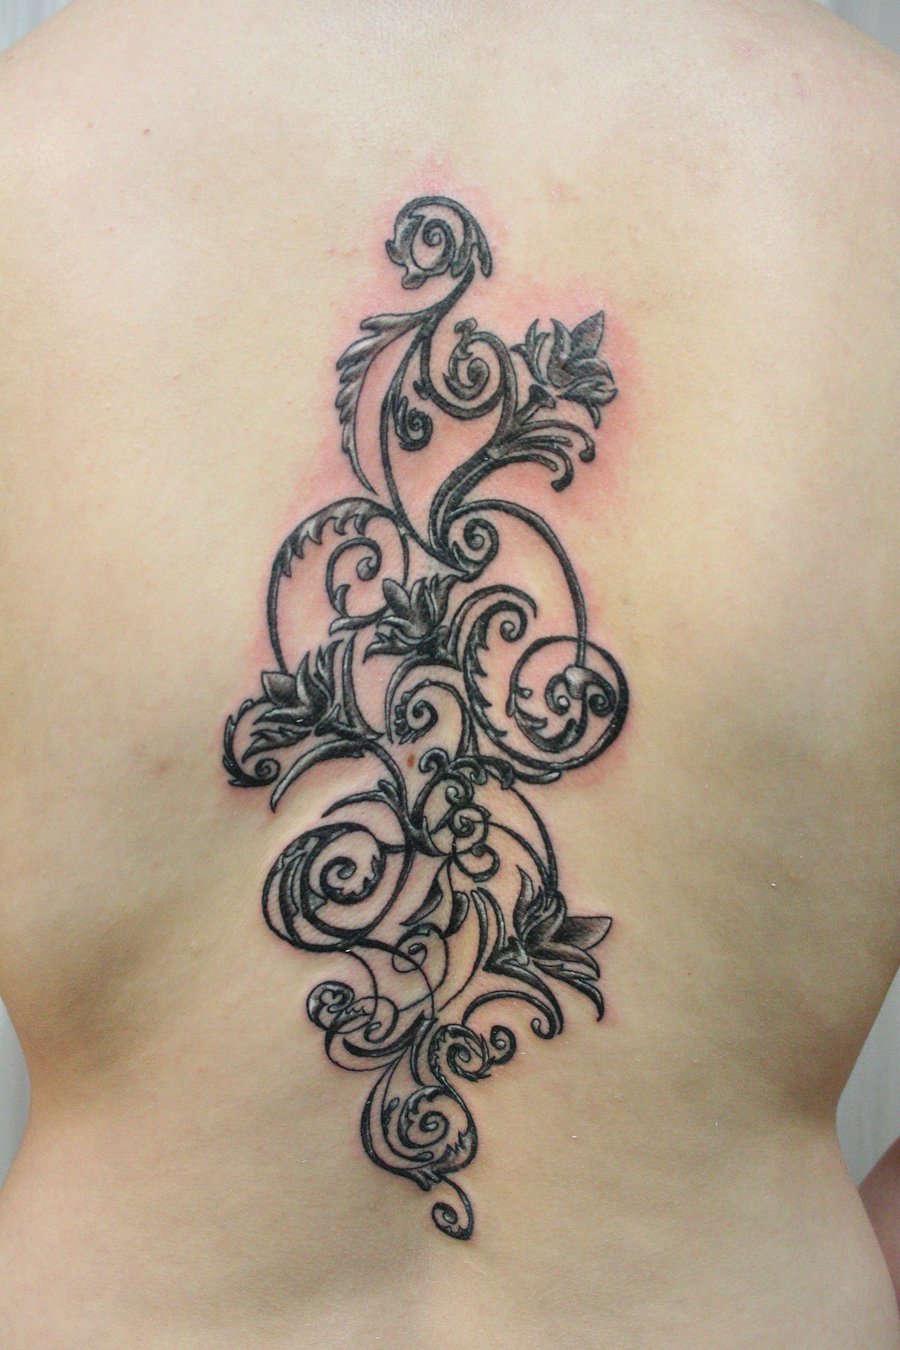 Tattoo and Tattoos Design: Beautiful Flower Tattoo Designs